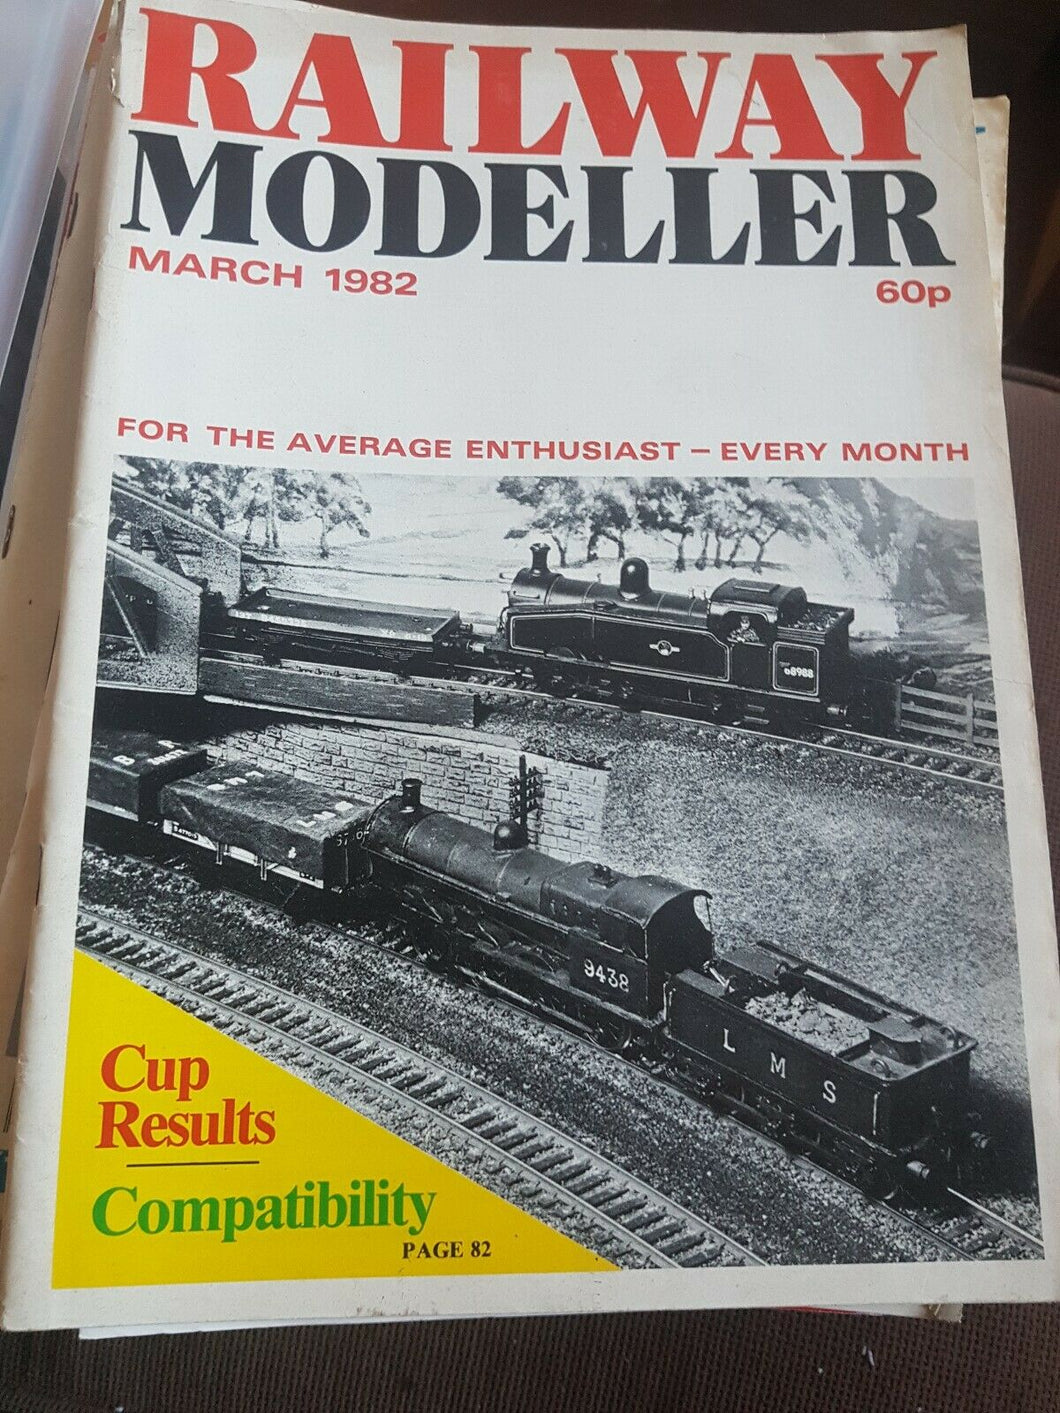 Railway modeller magazine March 1982